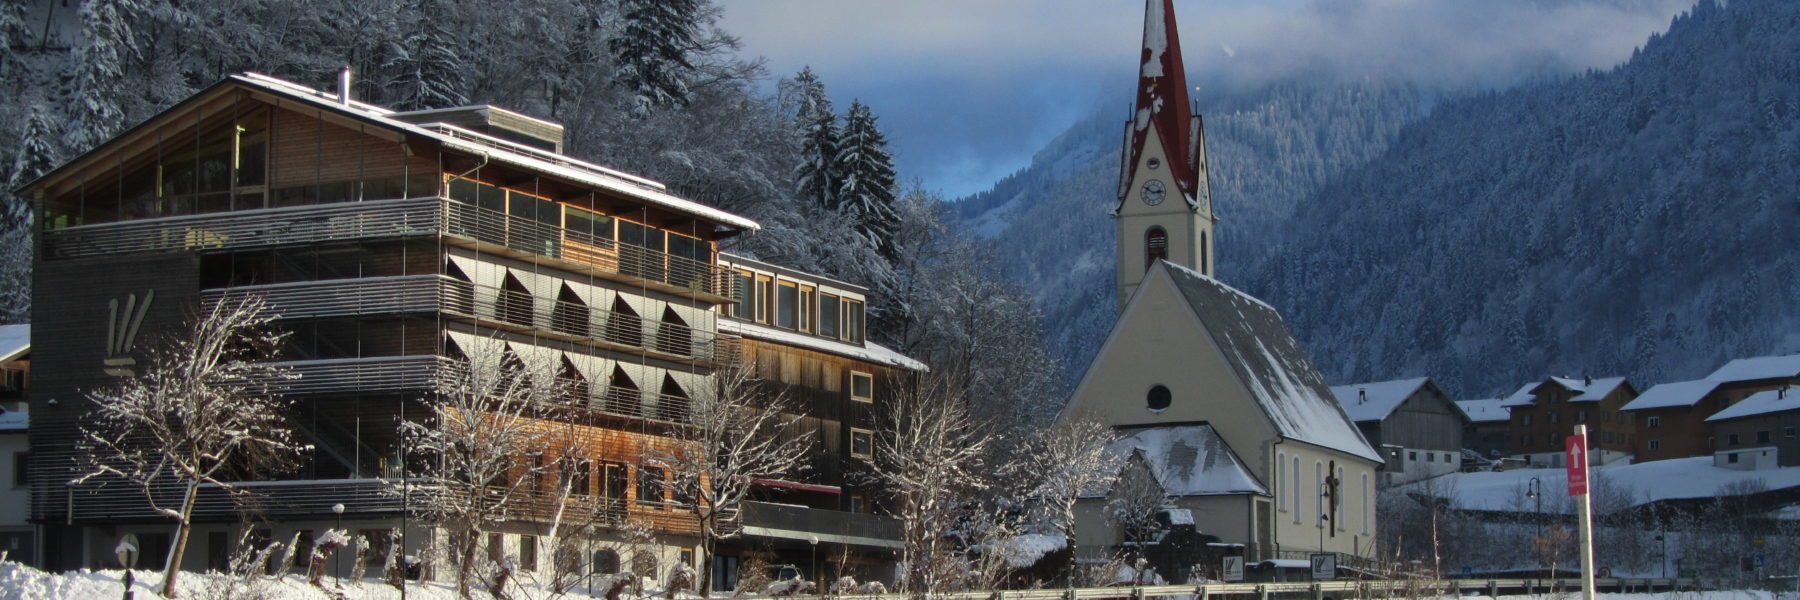 Hotel Krone Au Bregenzerwald Vorarlberg